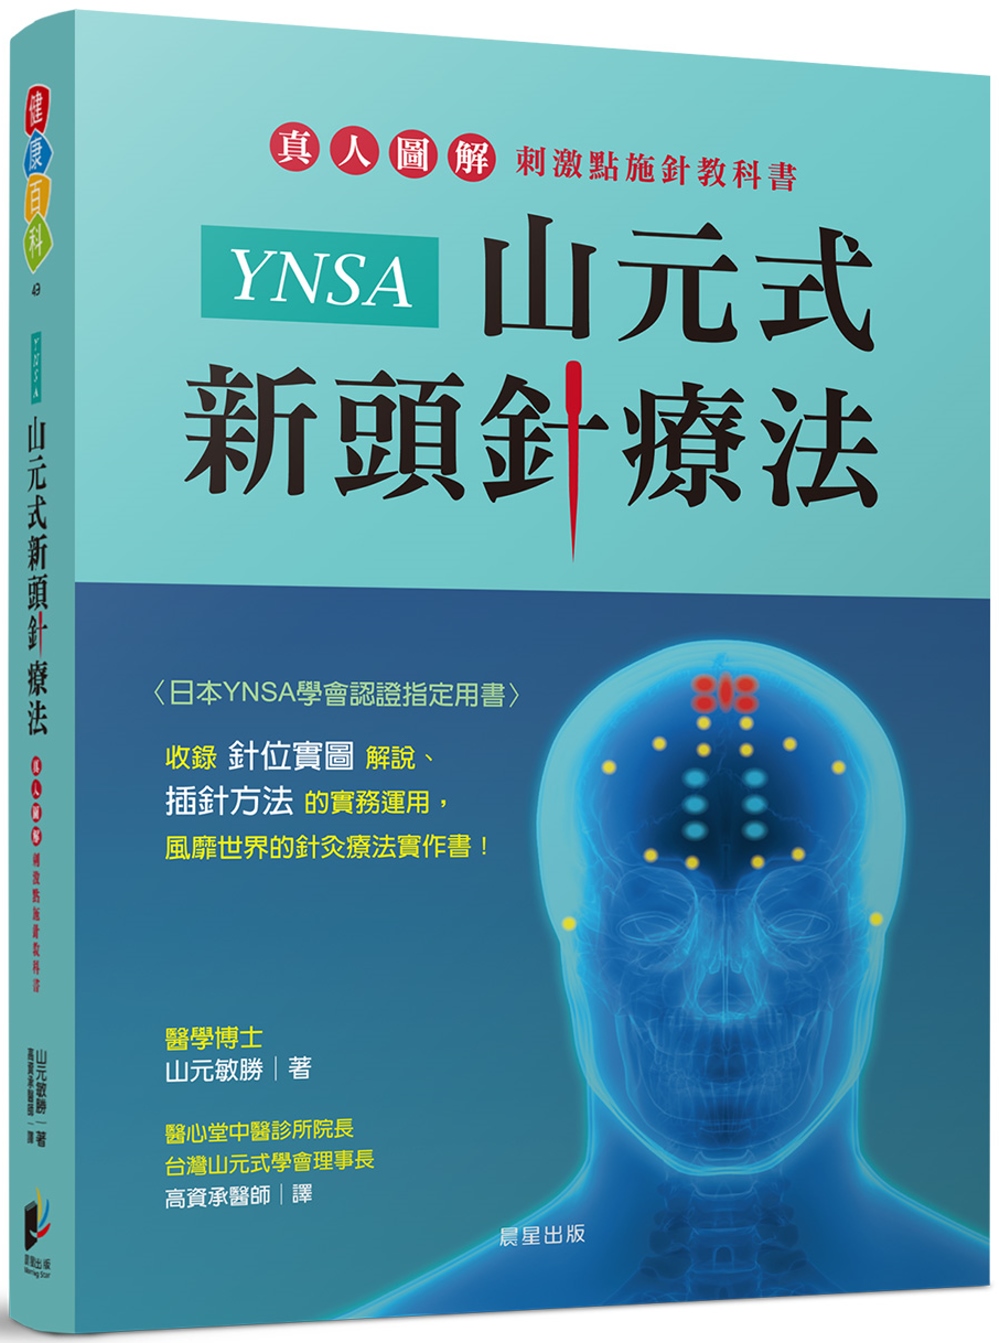 山元式新頭針療法YNSA - 健康/医学